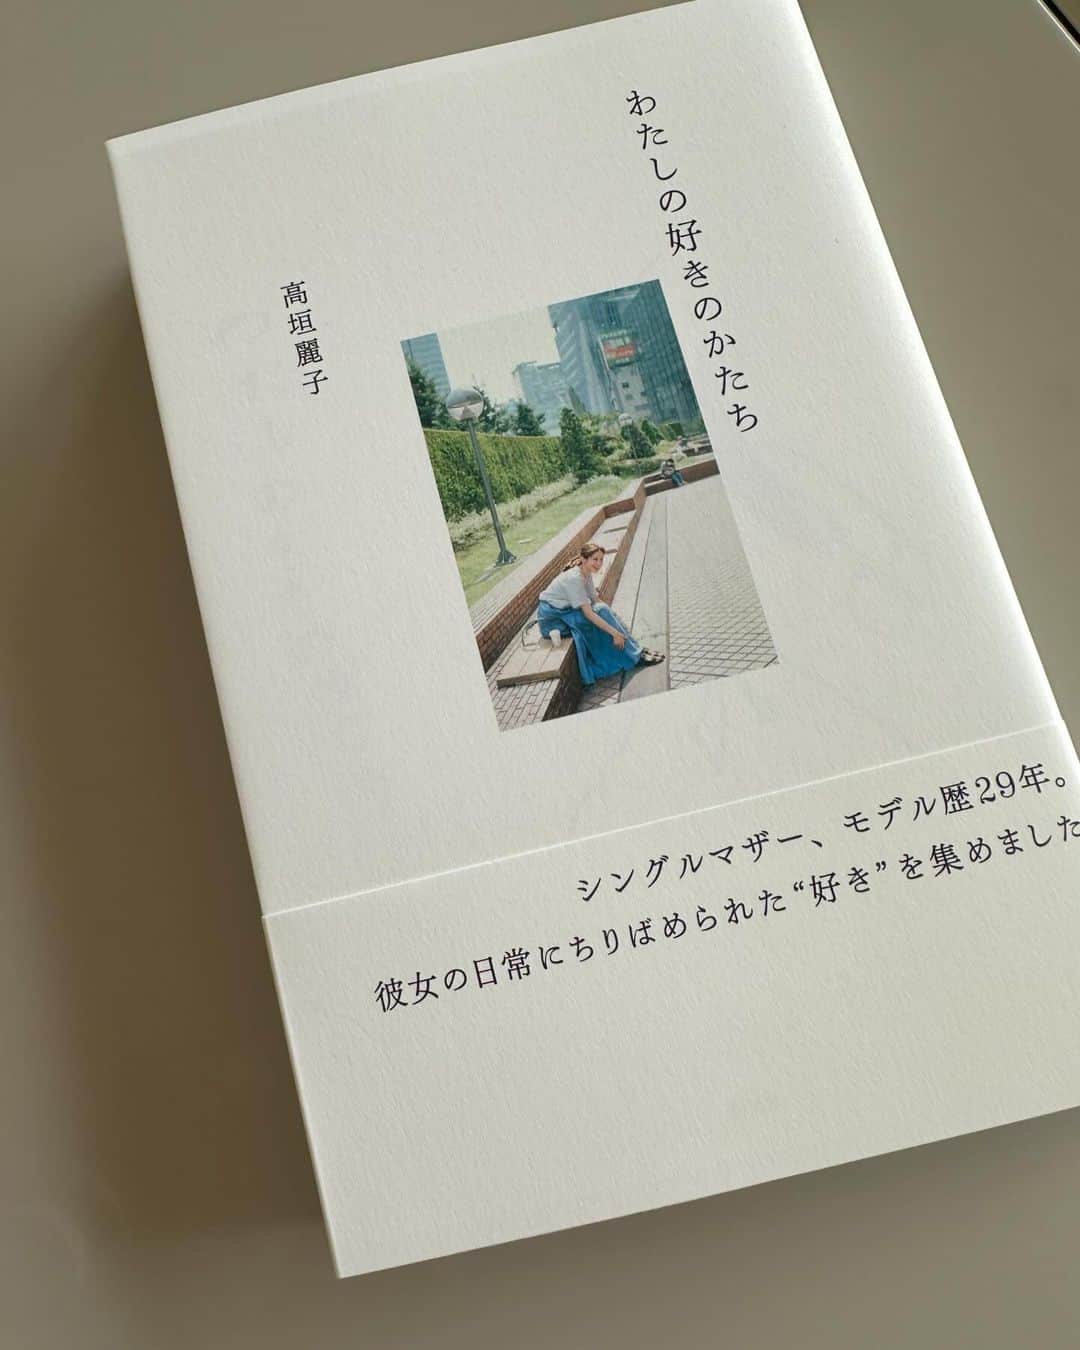 大草直子のインスタグラム：「素敵な一冊だった。  モデルの @reikotakagaki ちゃんの本。iPhoneで書いた、とあった。だからかな、身振り手振りで話す、麗ちゃんがそこにいる感じ。きちんと生きていないと、こんな文章は書けない。  嘘がなくて透明。不器用だけど、芯がある。人見知りで食いしん坊で、誠実で可愛い。書く文章は、麗ちゃんそのまま。10代の頃、ご両親が離婚され、自分がきちんと仕事をして柱になろう。お金がなくて、現場まで歩いて行ったことも。そして、2回の離婚、１人で育てているお嬢さんのことも、清潔で素直な文章で綴られていました。あの華奢な体で、よく頑張ったんだなあ、だからこそ、40代になって、肩の力が抜けて、本来のふわっとした麗ちゃんに進化したんだろうなあ。20代から彼女を知っているからこそ、少し答え合わせをするように、涙でぐしゃぐしゃになりながら読みました。そして、その気持ちのまま、麗ちゃんにライン。「素敵な本をありがとう」  いやあ、本当ありがとう。 @reikotakagaki  #自分を幸せにできるのは #結局のところ“自分”なんだ #この帯の言葉も好き #巻末の #マネージャーさん #すーじー #お嬢さんの #なっちゃんからのコメントも #くすりとしたり #うるっとしたり #また読み返そ #レシピも作ってみる」